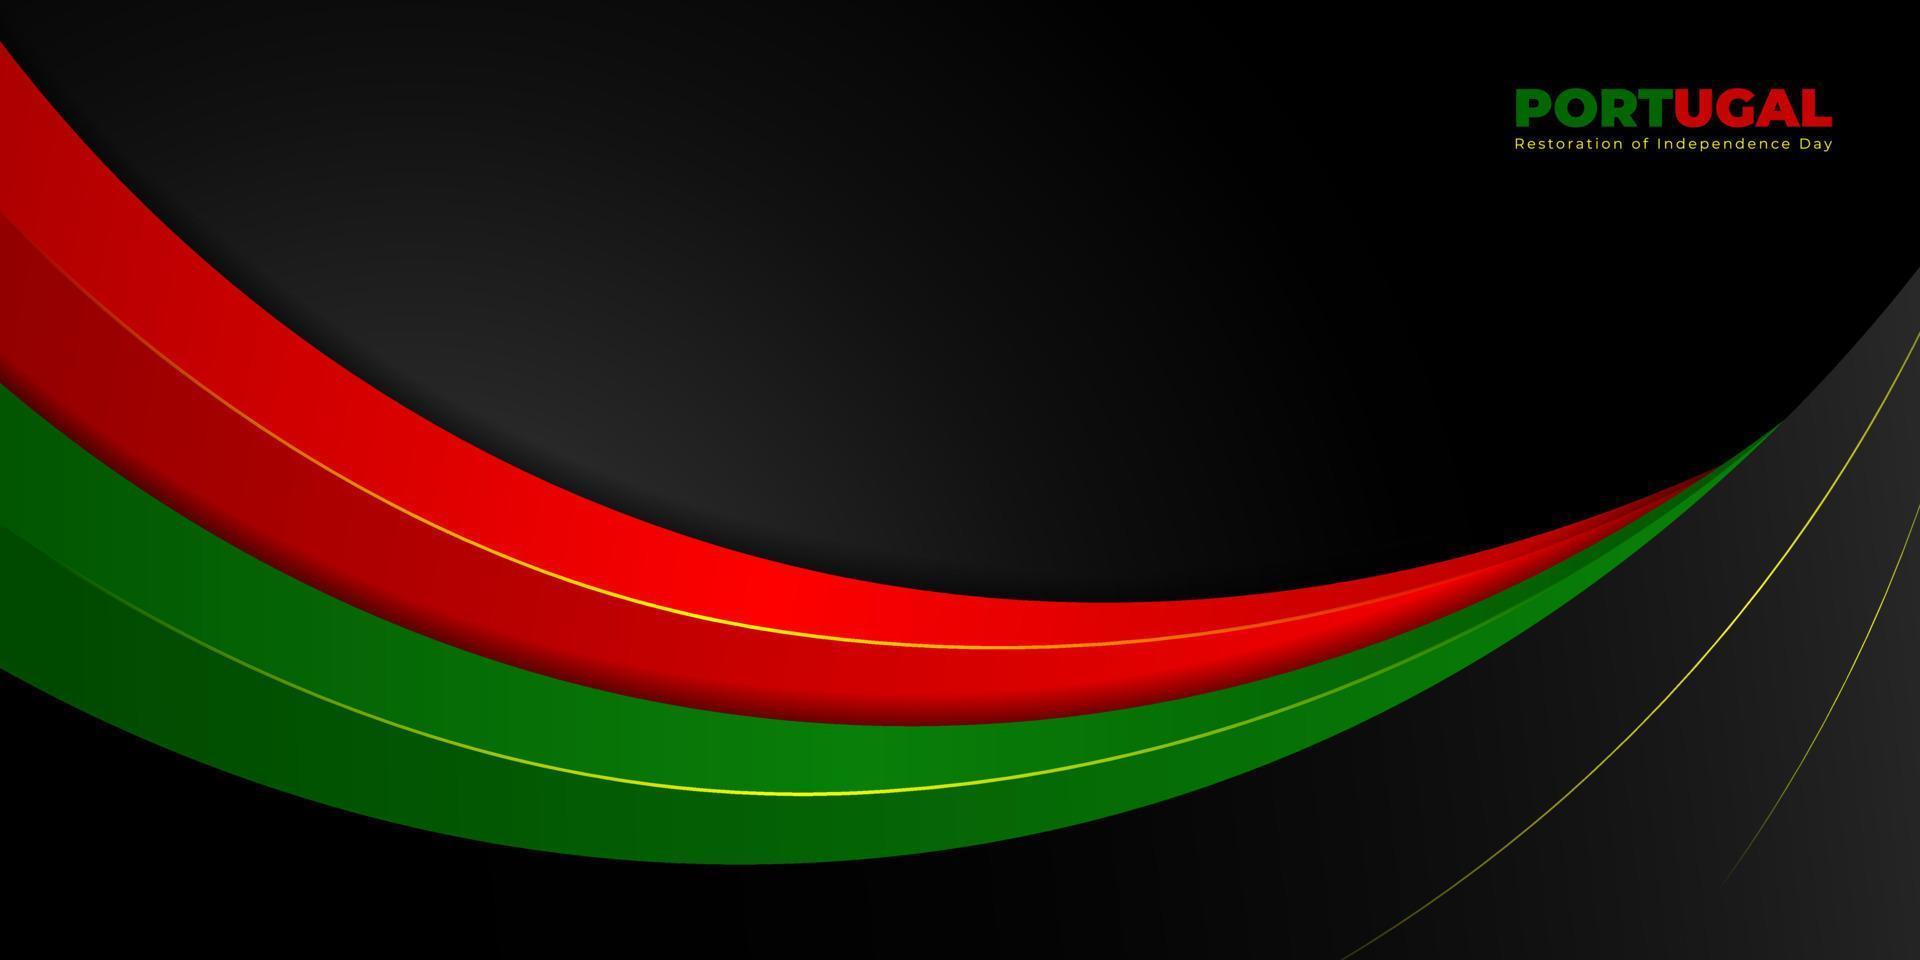 gewelltes rotes und grünes abstraktes Design mit schwarzem Hintergrund. portugal restaurierung unabhängigkeitstag vorlagendesign. vektor